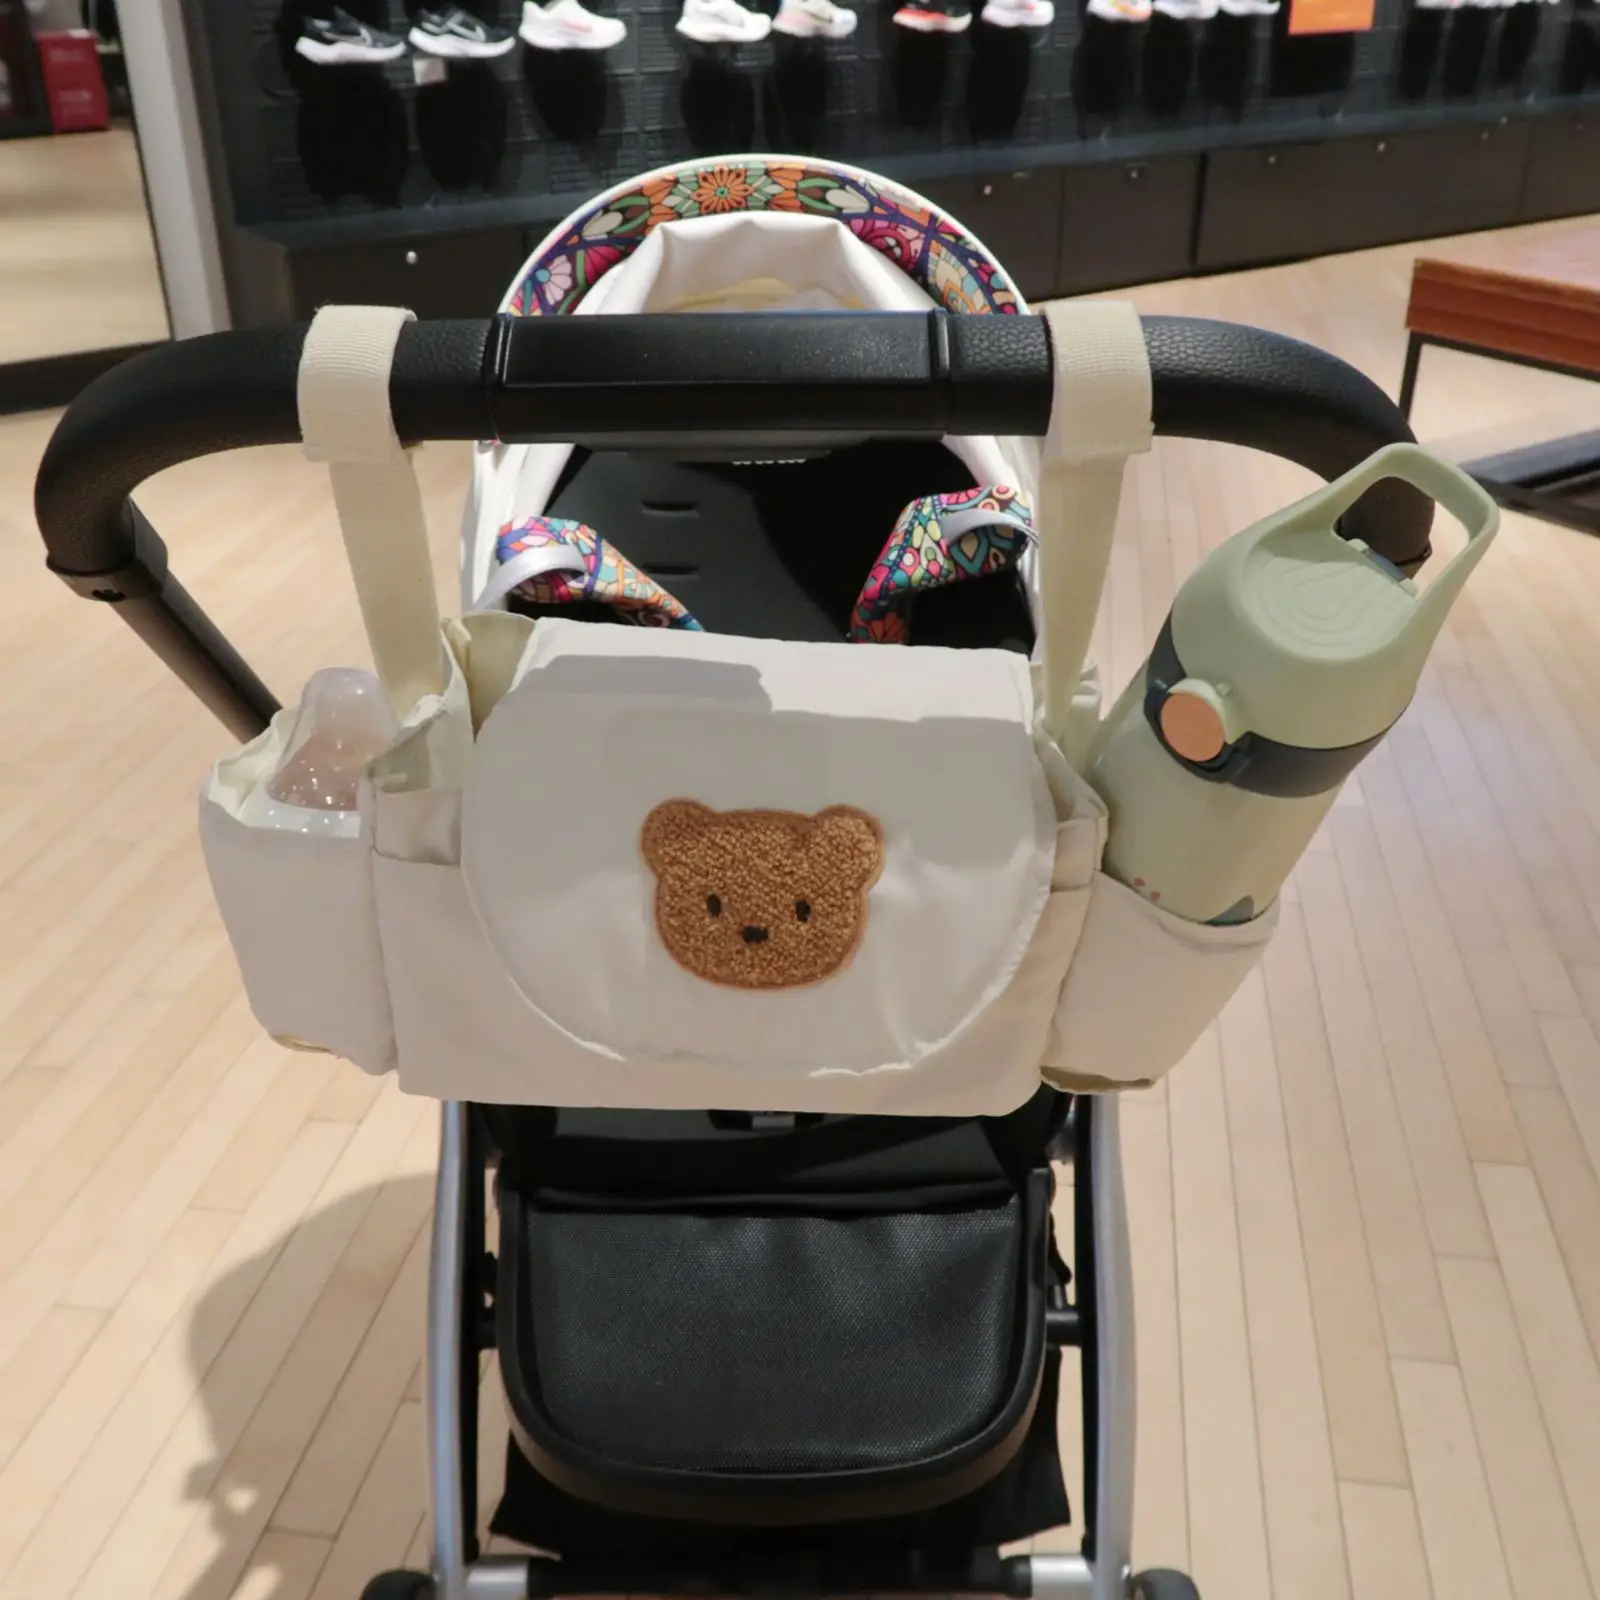 Сумка для детских подгузников с Мультяшным Медведем и кроликом, переносная сумка для коляски, органайзер, Модная Сумка для мамы, модная сумка для хранения